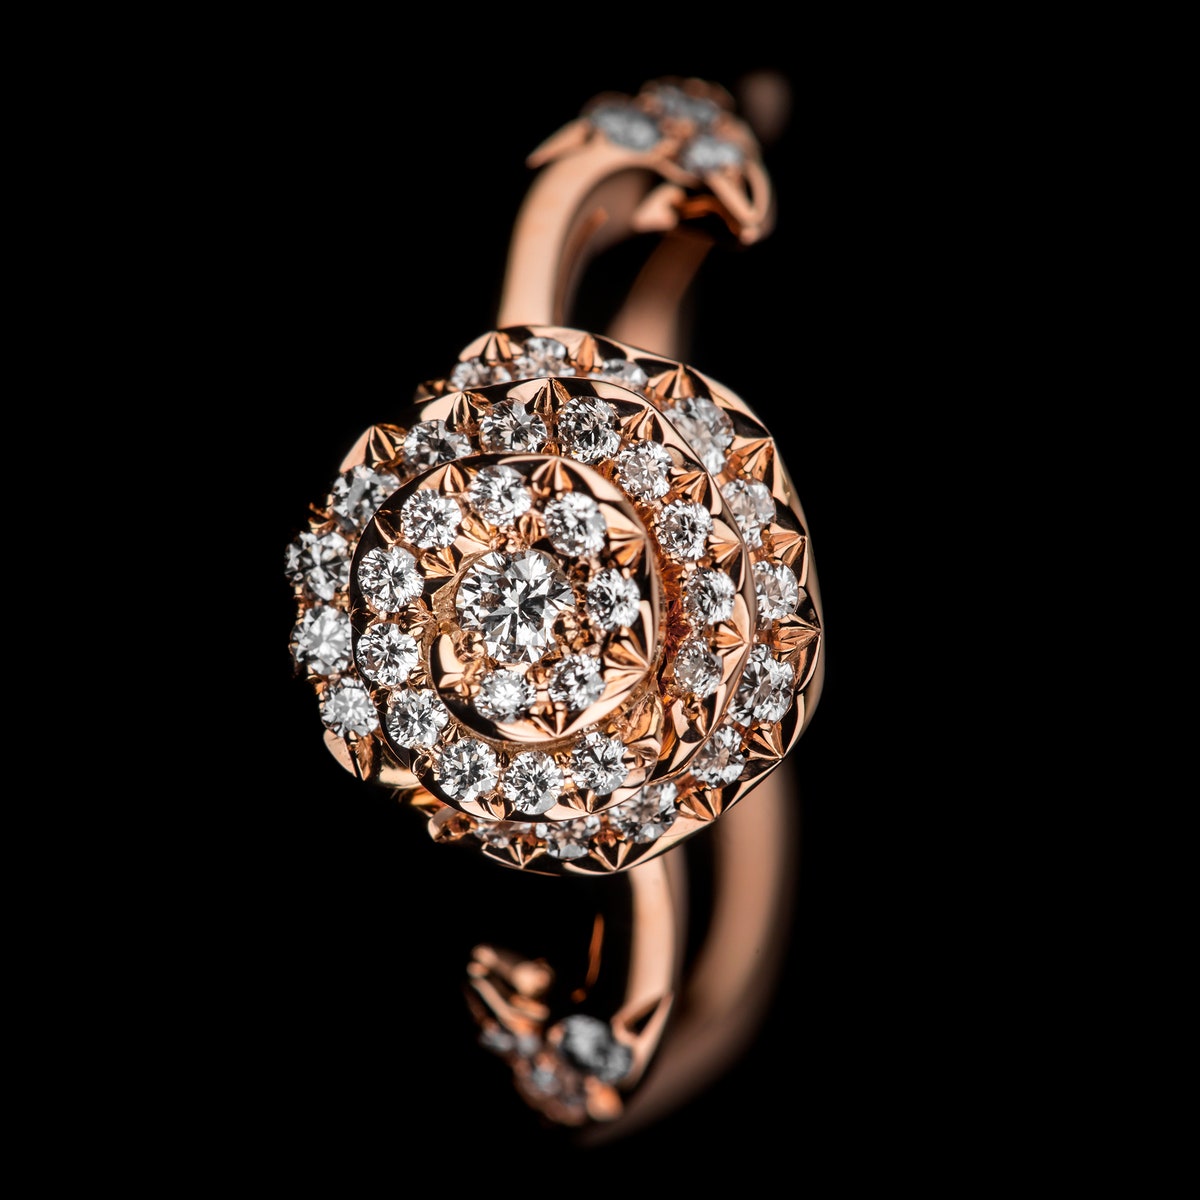 Объект желания: кольцо Dior с «кутюрной» розой